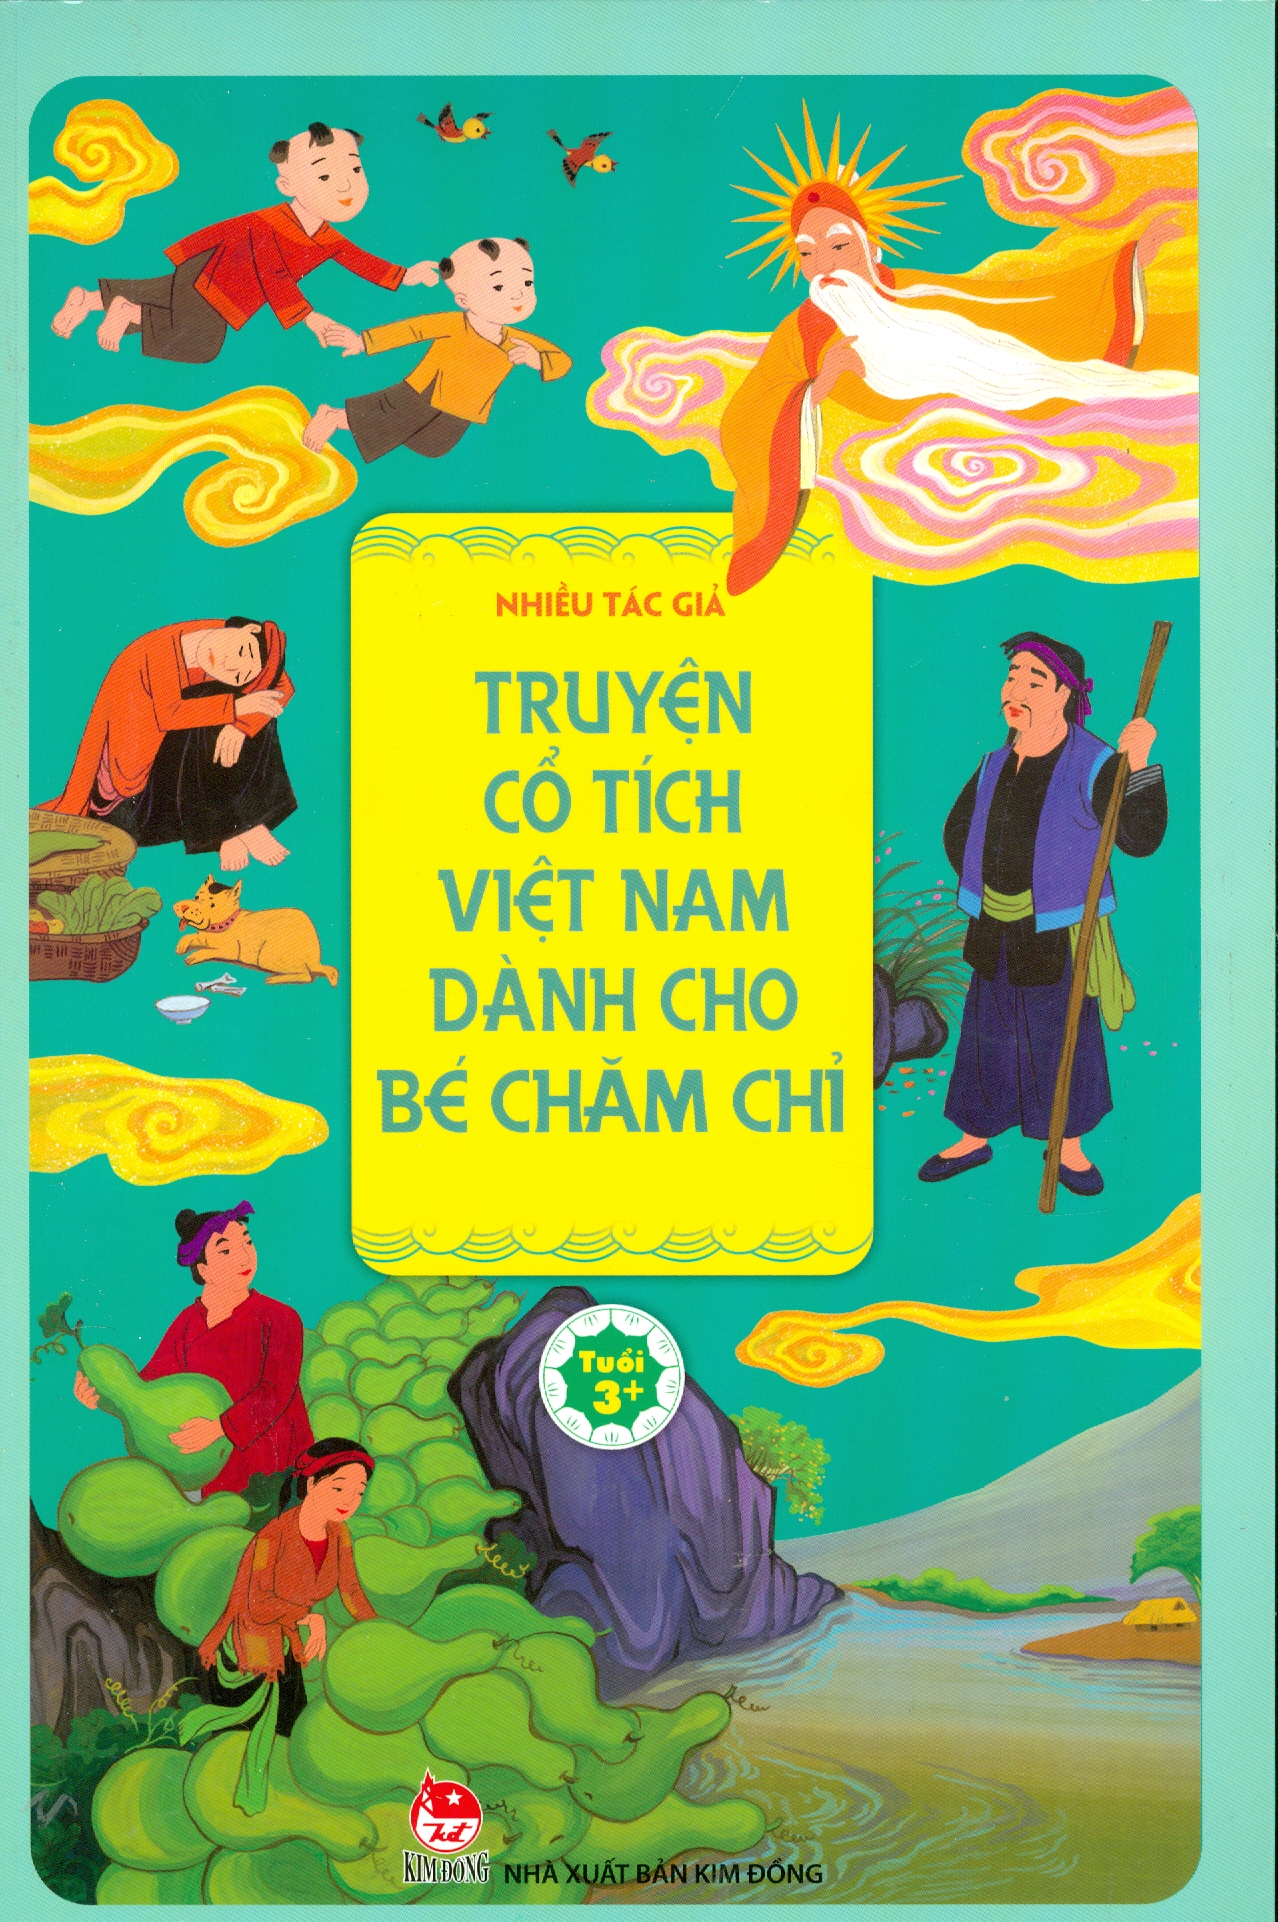 Truyện cổ tích Việt Nam không chỉ là một phần tuổi thơ của các chúng ta mà còn là biểu tượng của văn hoá và truyền thống đất nước. Hãy xem hình ảnh về những câu chuyện cổ tích Việt Nam để cảm nhận sự đậm đà và mong manh của văn hoá Việt và cảm nhận được giá trị văn hóa tinh túy của đất nước.